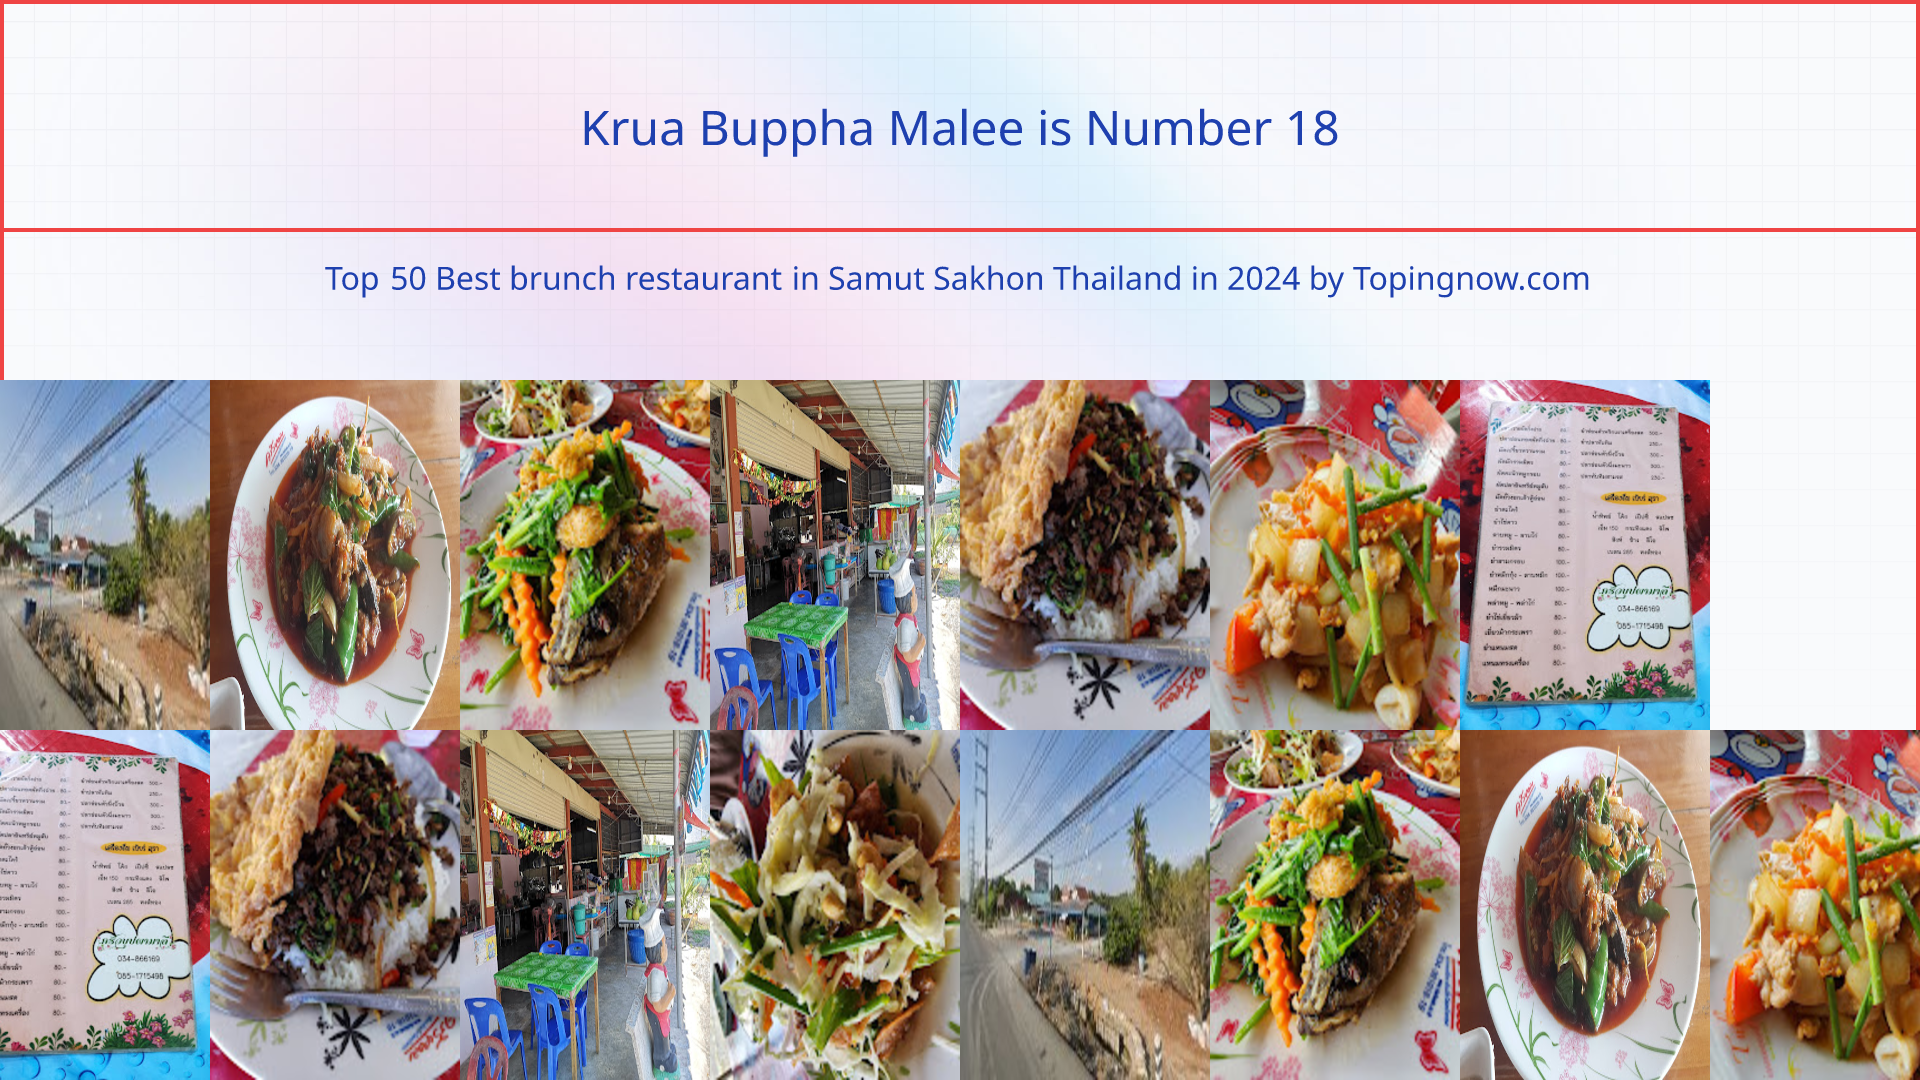 Krua Buppha Malee: Top 50 Best brunch restaurant in Samut Sakhon Thailand in 2024